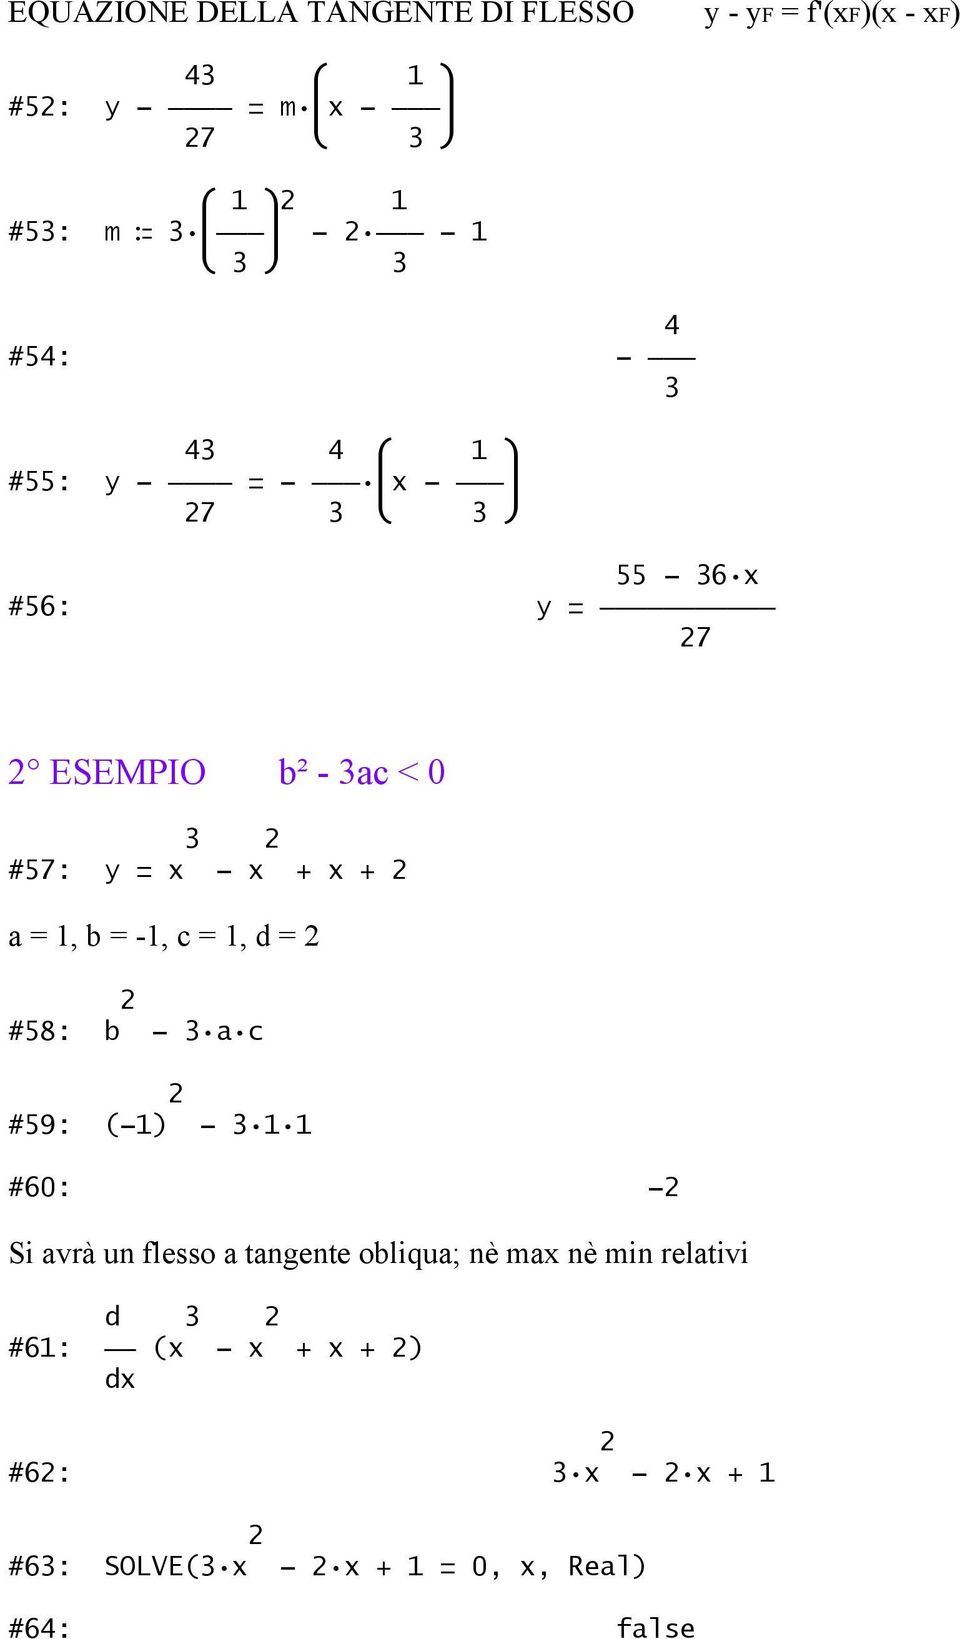 b = -1, c = 1, d = #58: b - a c #59: (-1) - 1 1 #60: - Si avrà un flesso a tangente obliqua; nè